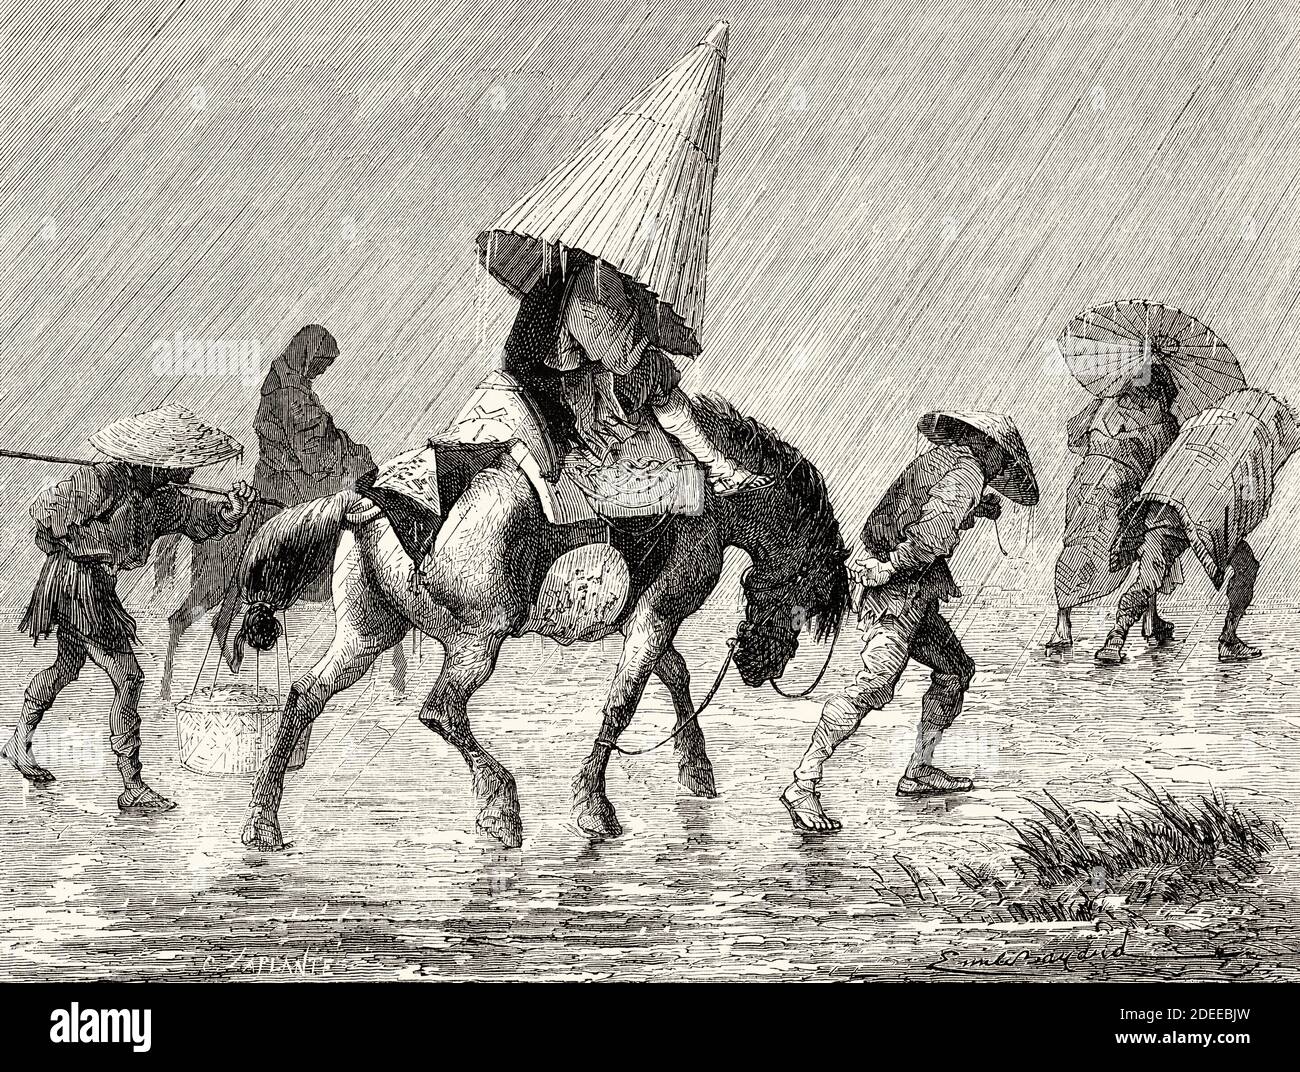 Sac à dos japonais sous la pluie, Japon. Ancienne illustration gravée du XIXe Voyage au Japon par aime Humbert de El Mundo en la Mano 1879 Banque D'Images